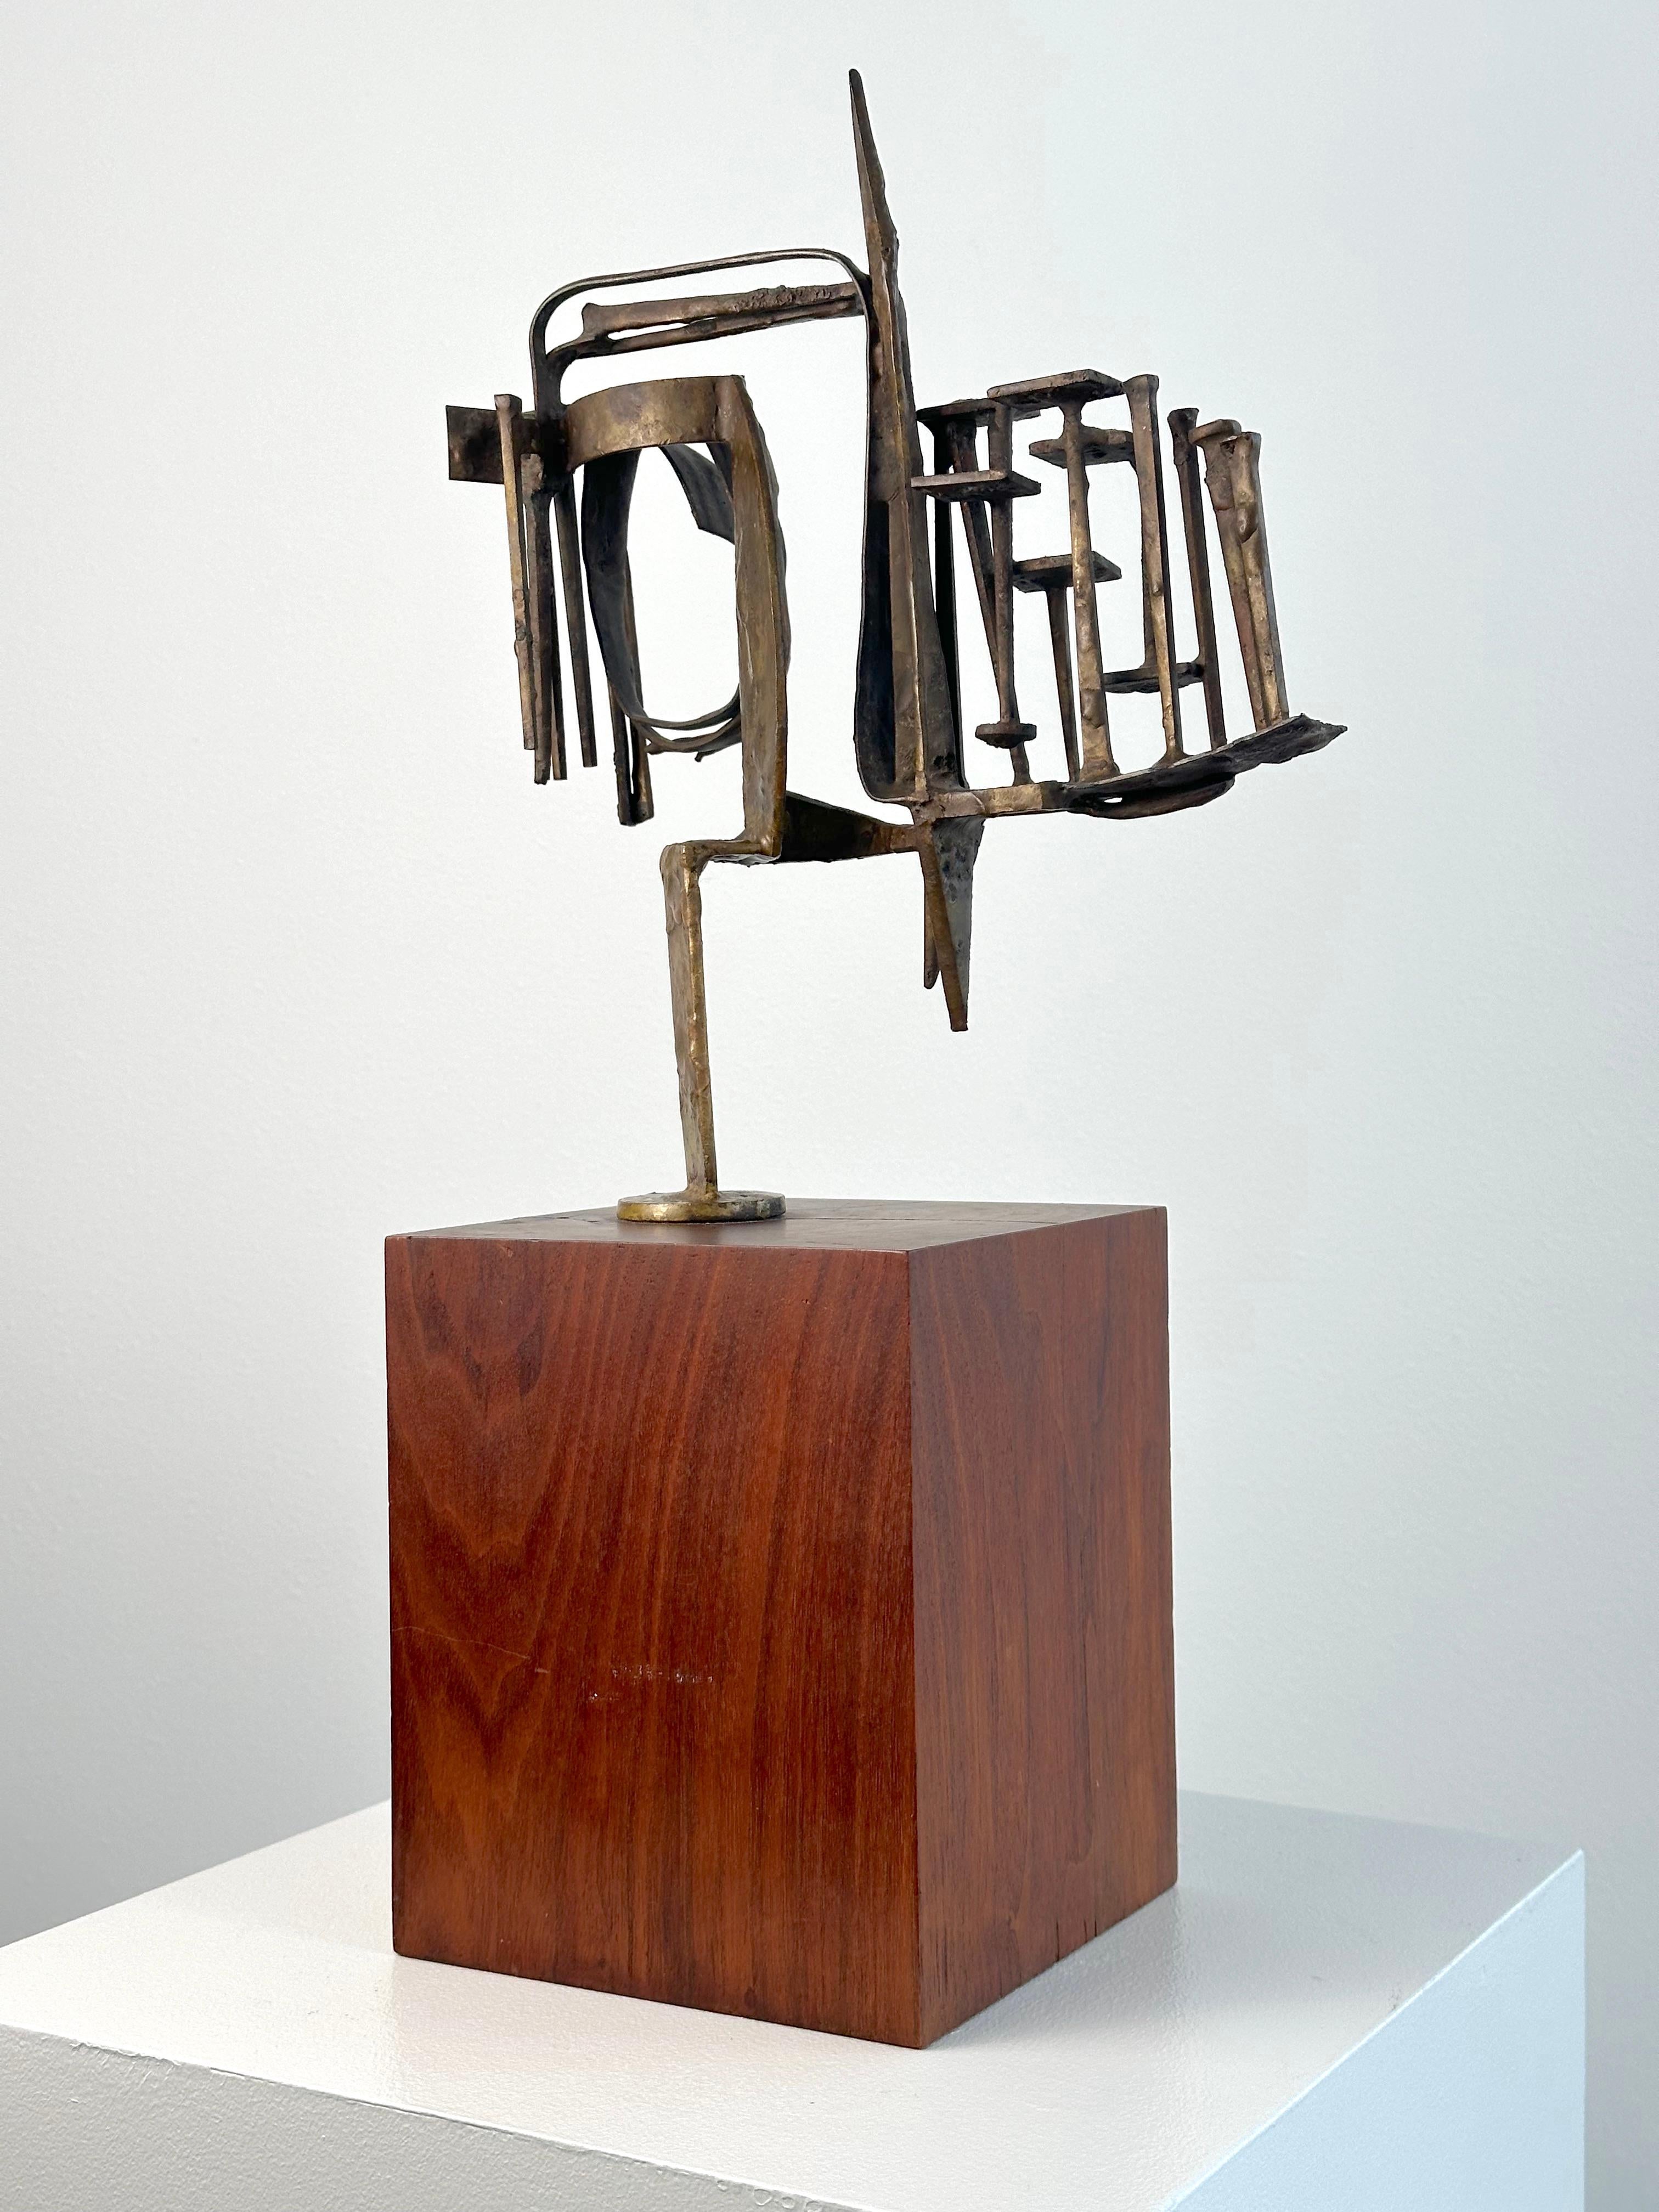 Banner (abstrakte expressionistische Skulptur, Tulsa OK Künstlerin) (Abstrakter Expressionismus), Sculpture, von Duayne Hatchett 